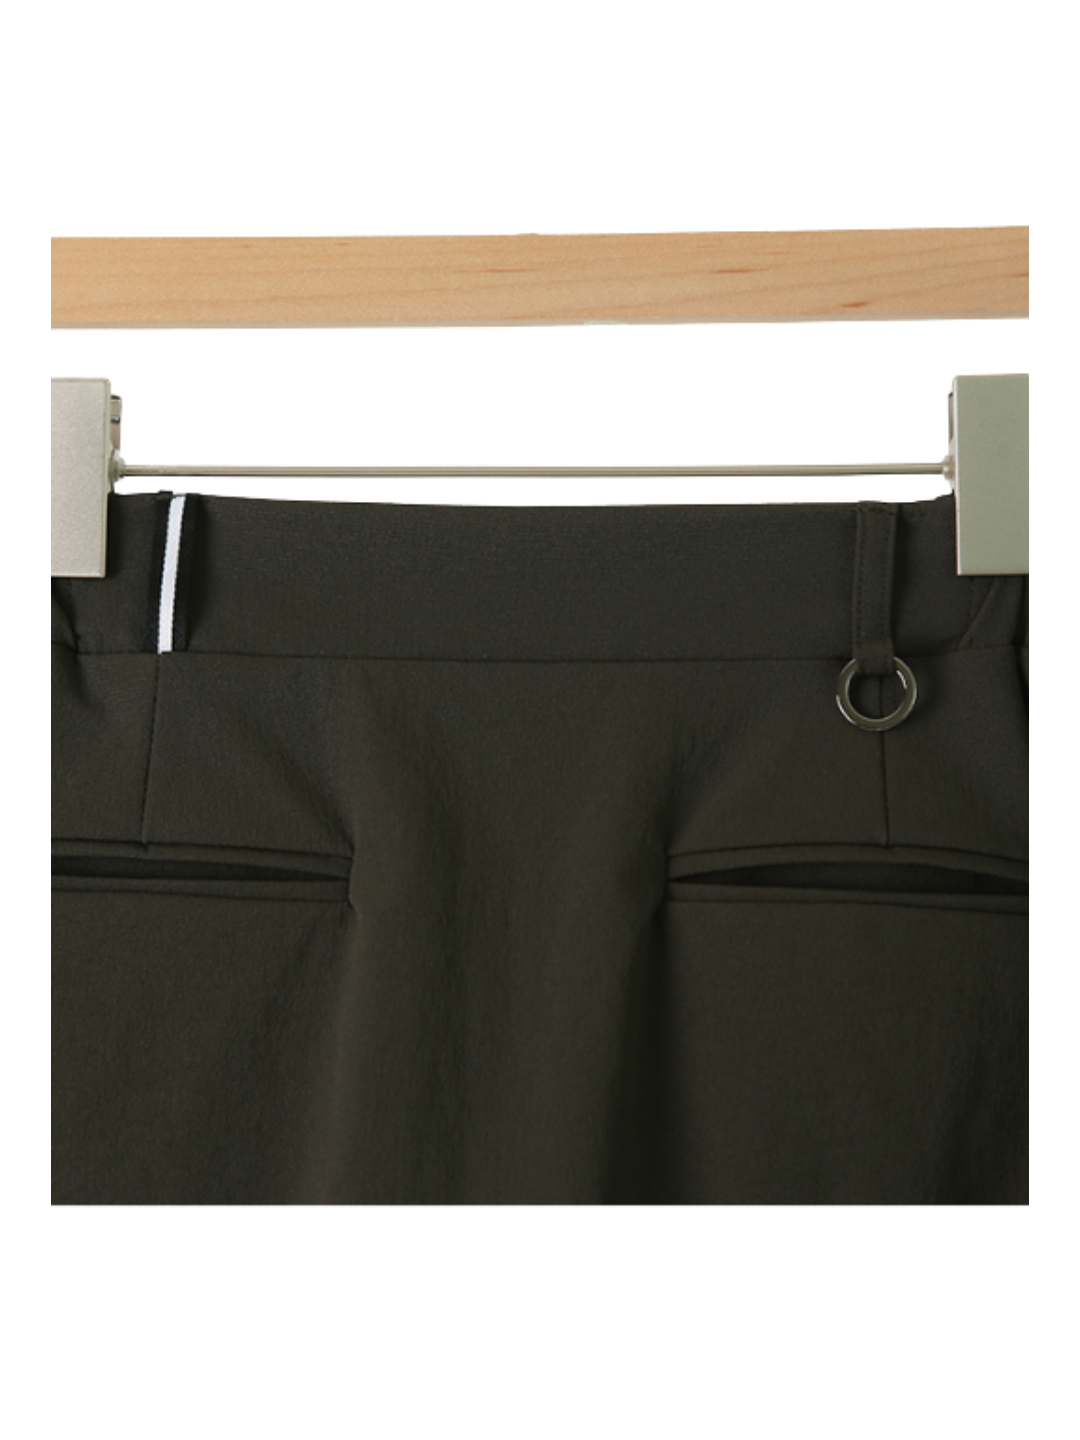 GQ Golf Pocket Skirt CH617